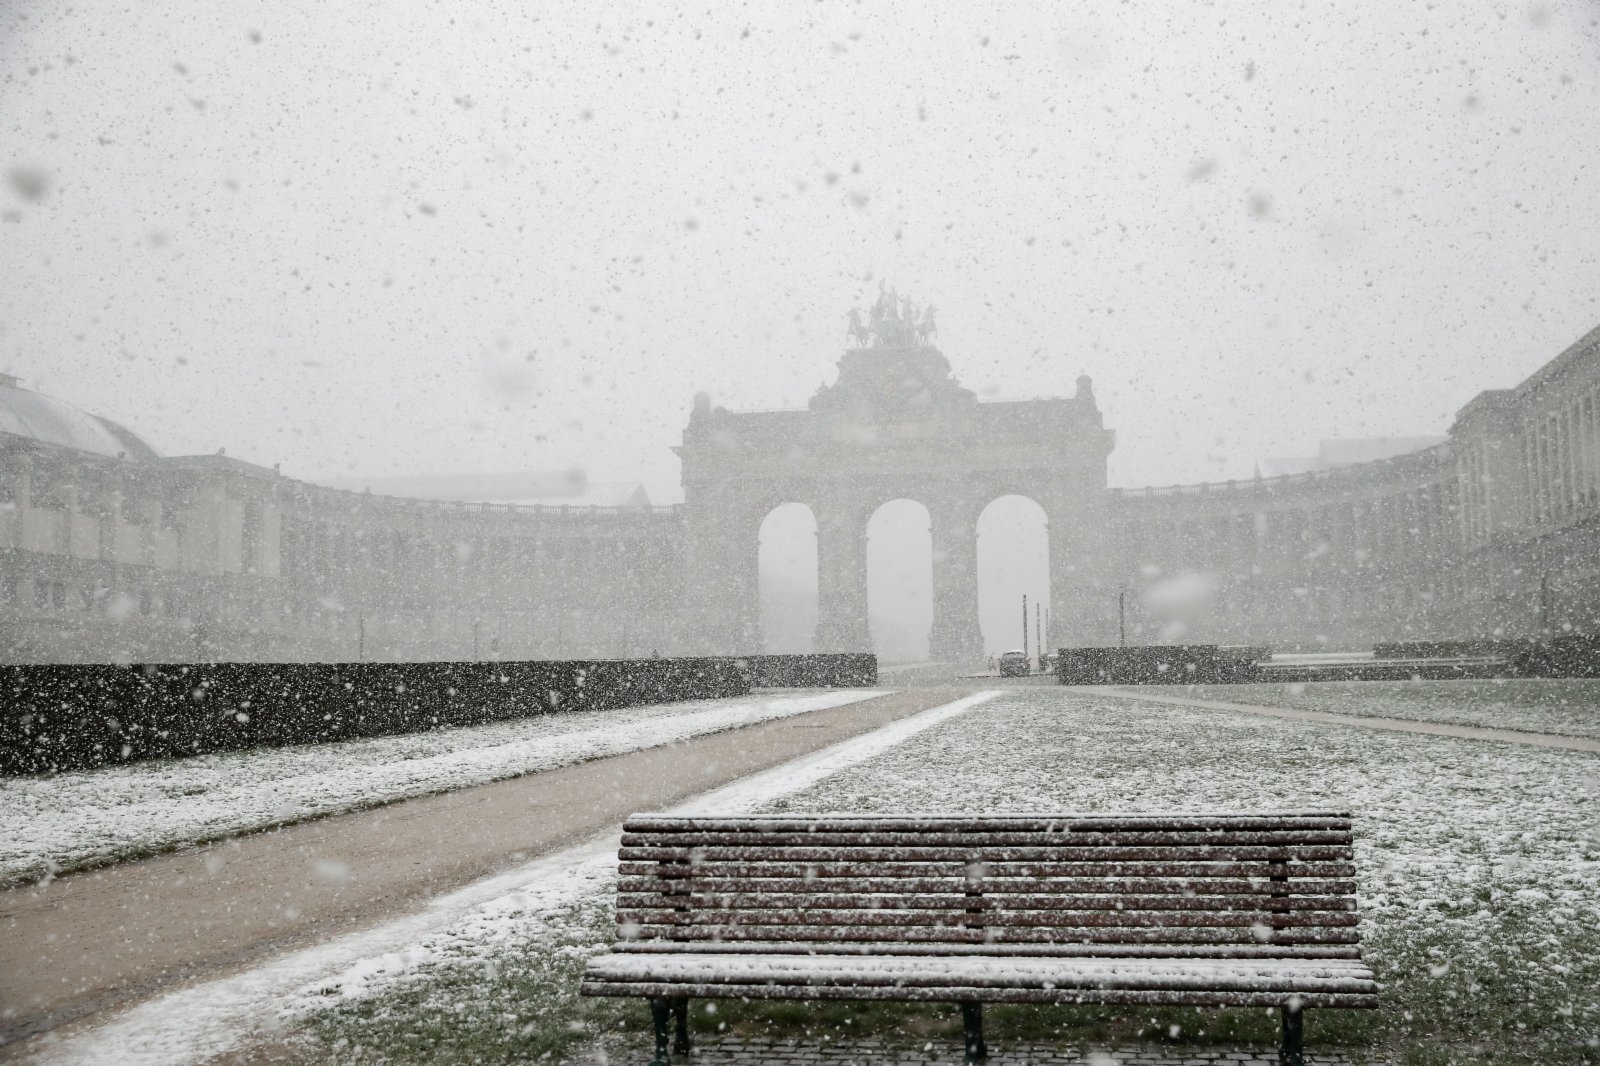 這是4月6日在比利時布魯塞爾五十周年紀念公園拍攝的雪景。